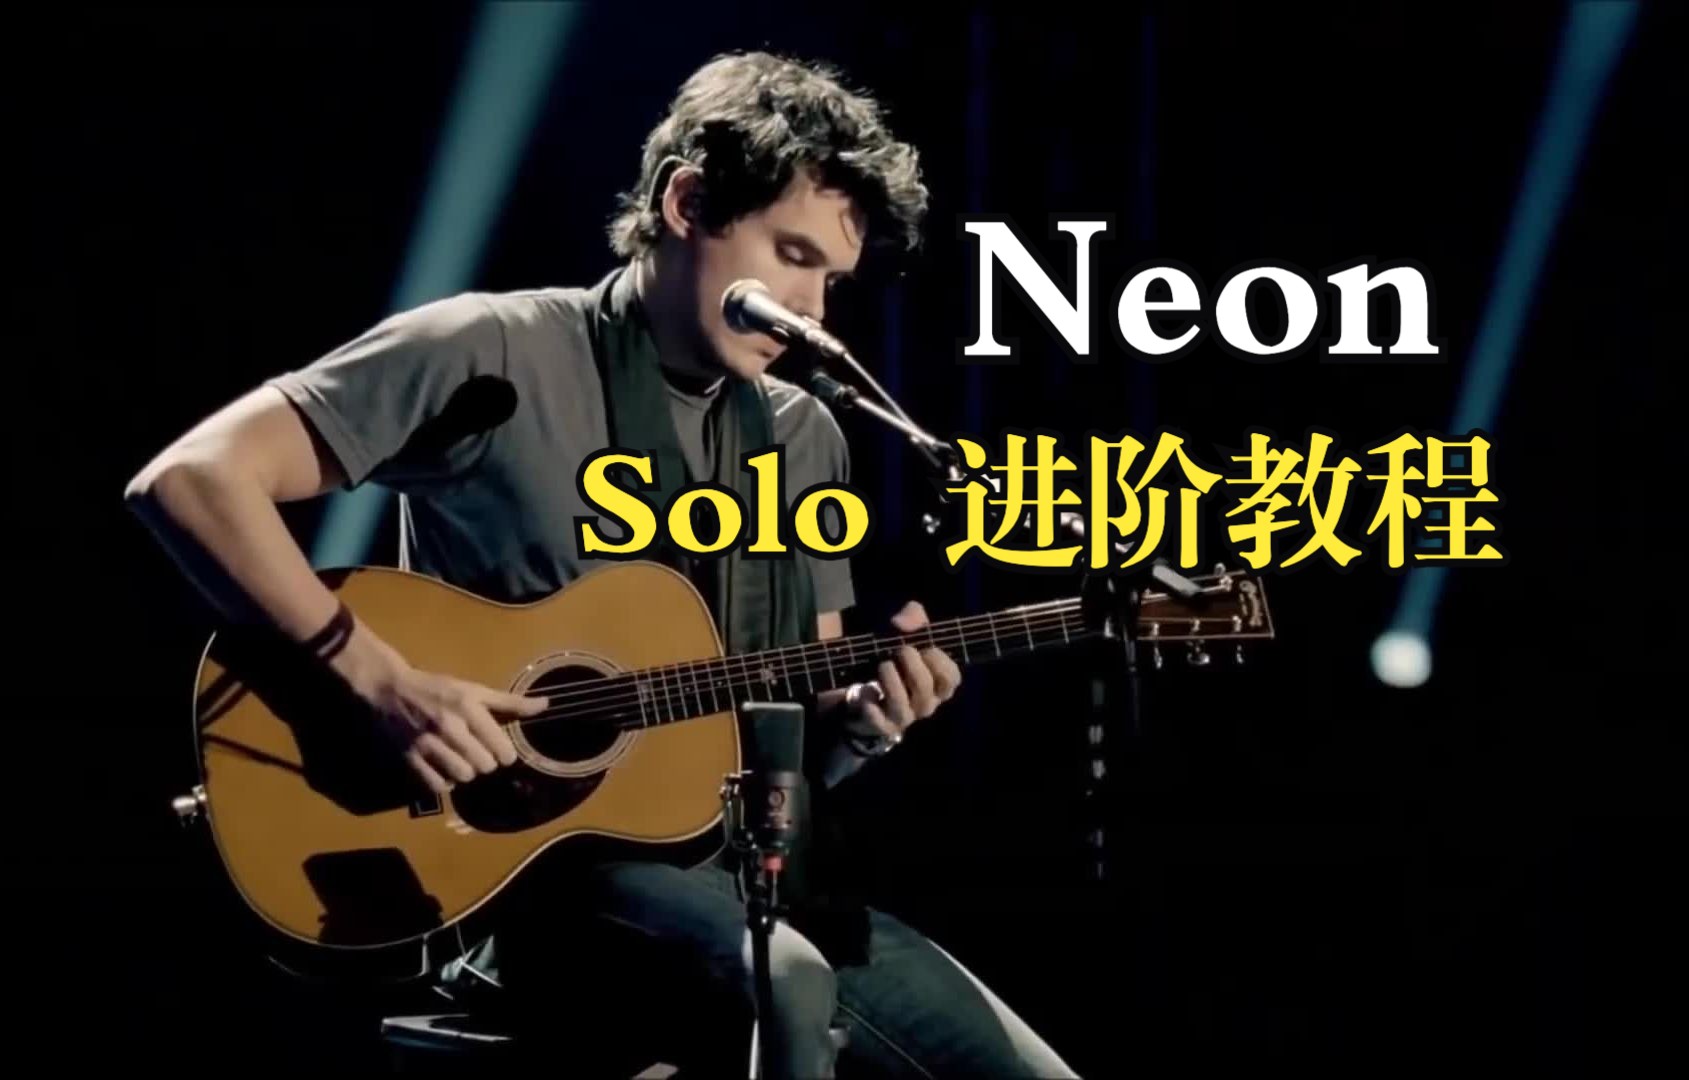 【学囧妹就对】 吉他弹唱天花板！John Mayer - Neon 进阶教程！